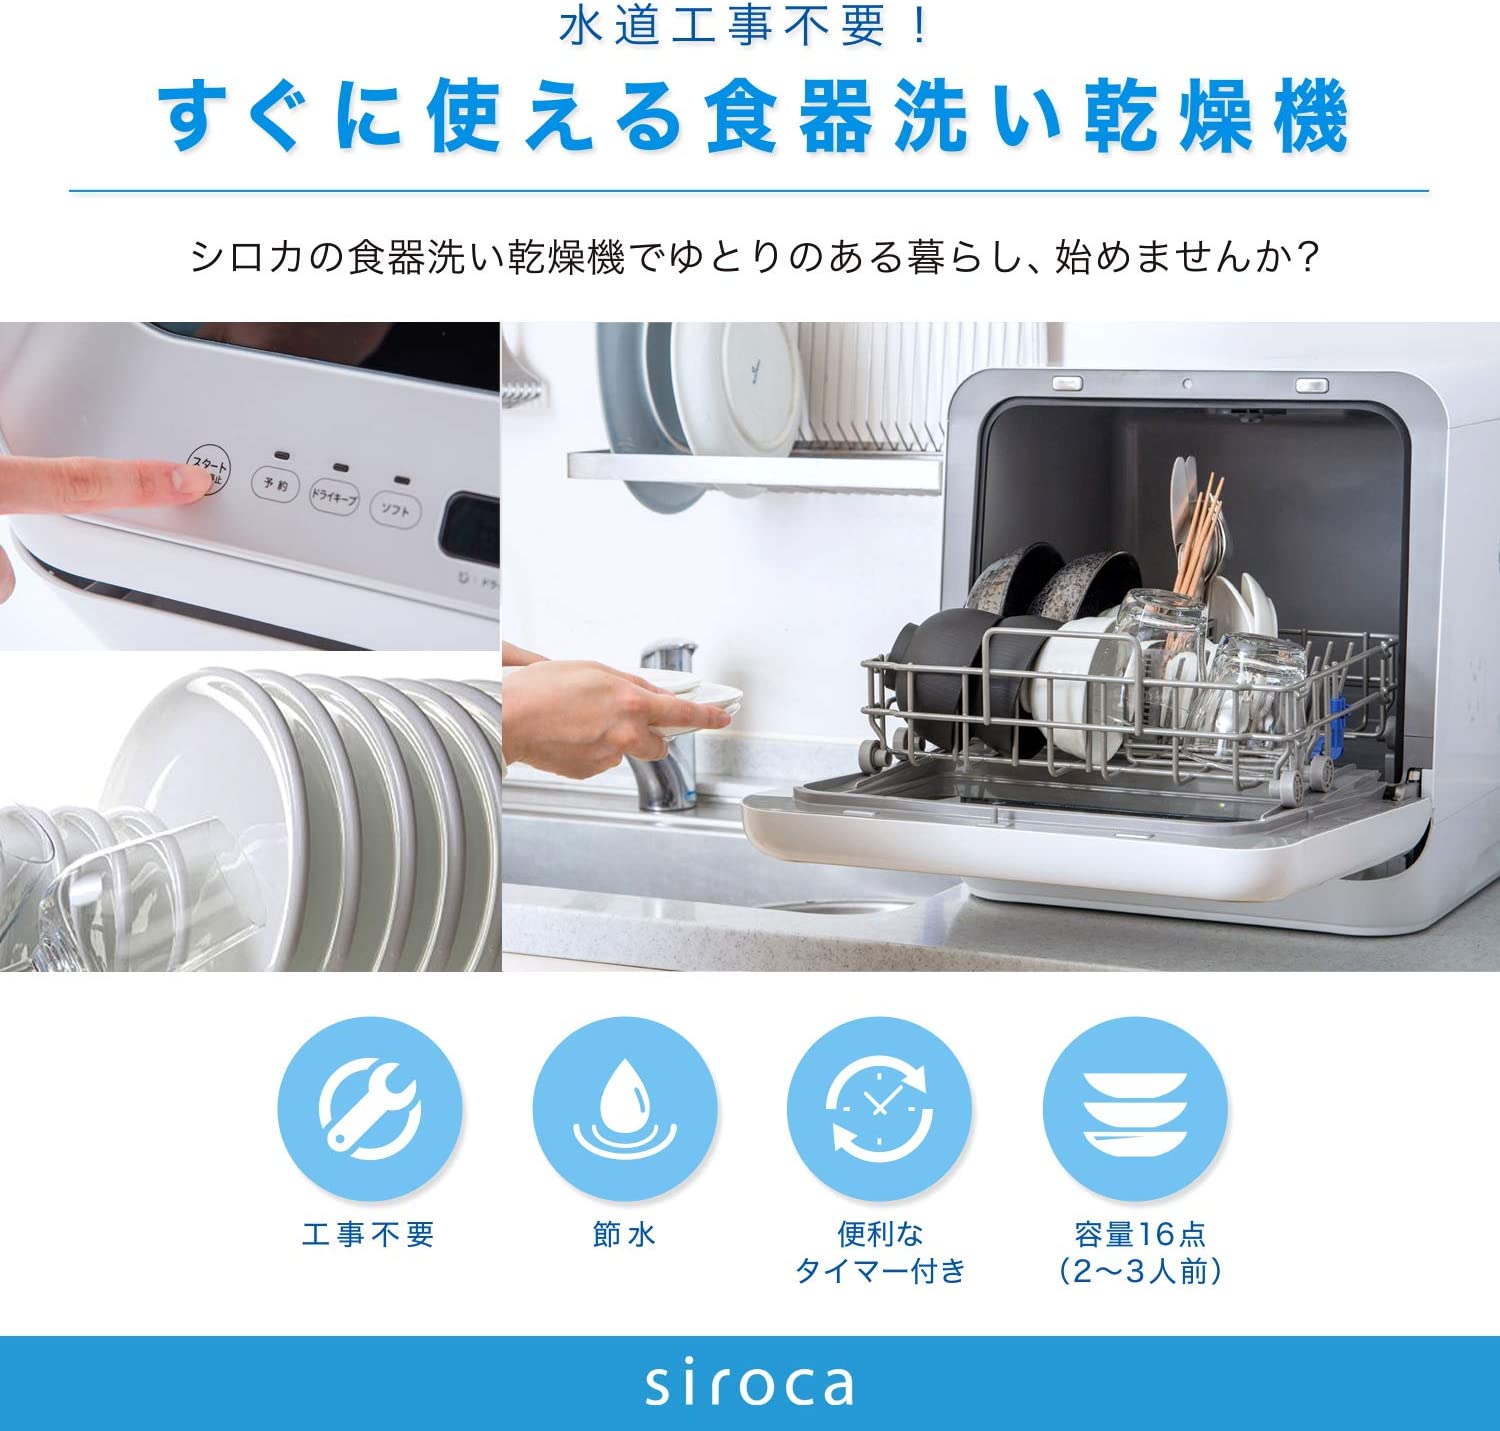 4~5人対応 食器洗い乾燥機 工事不要 5つの洗浄コース-